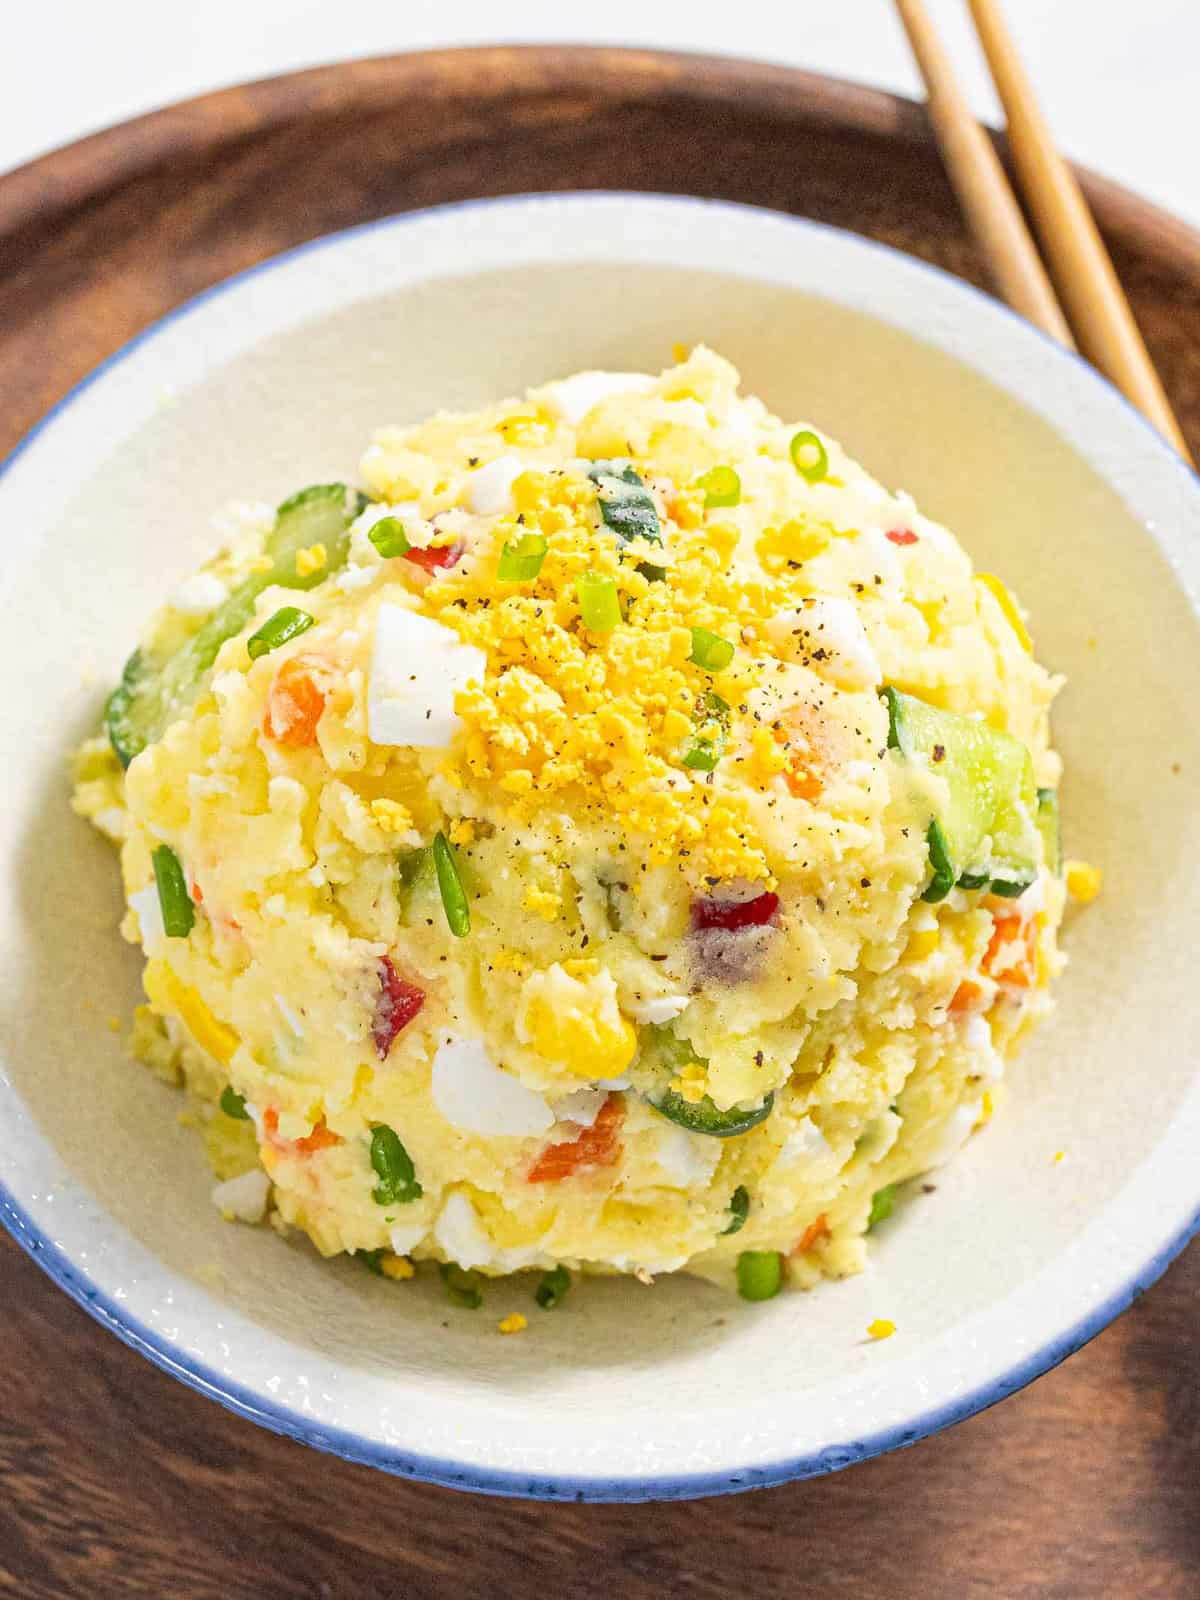 Korean potato salad in a bowl.